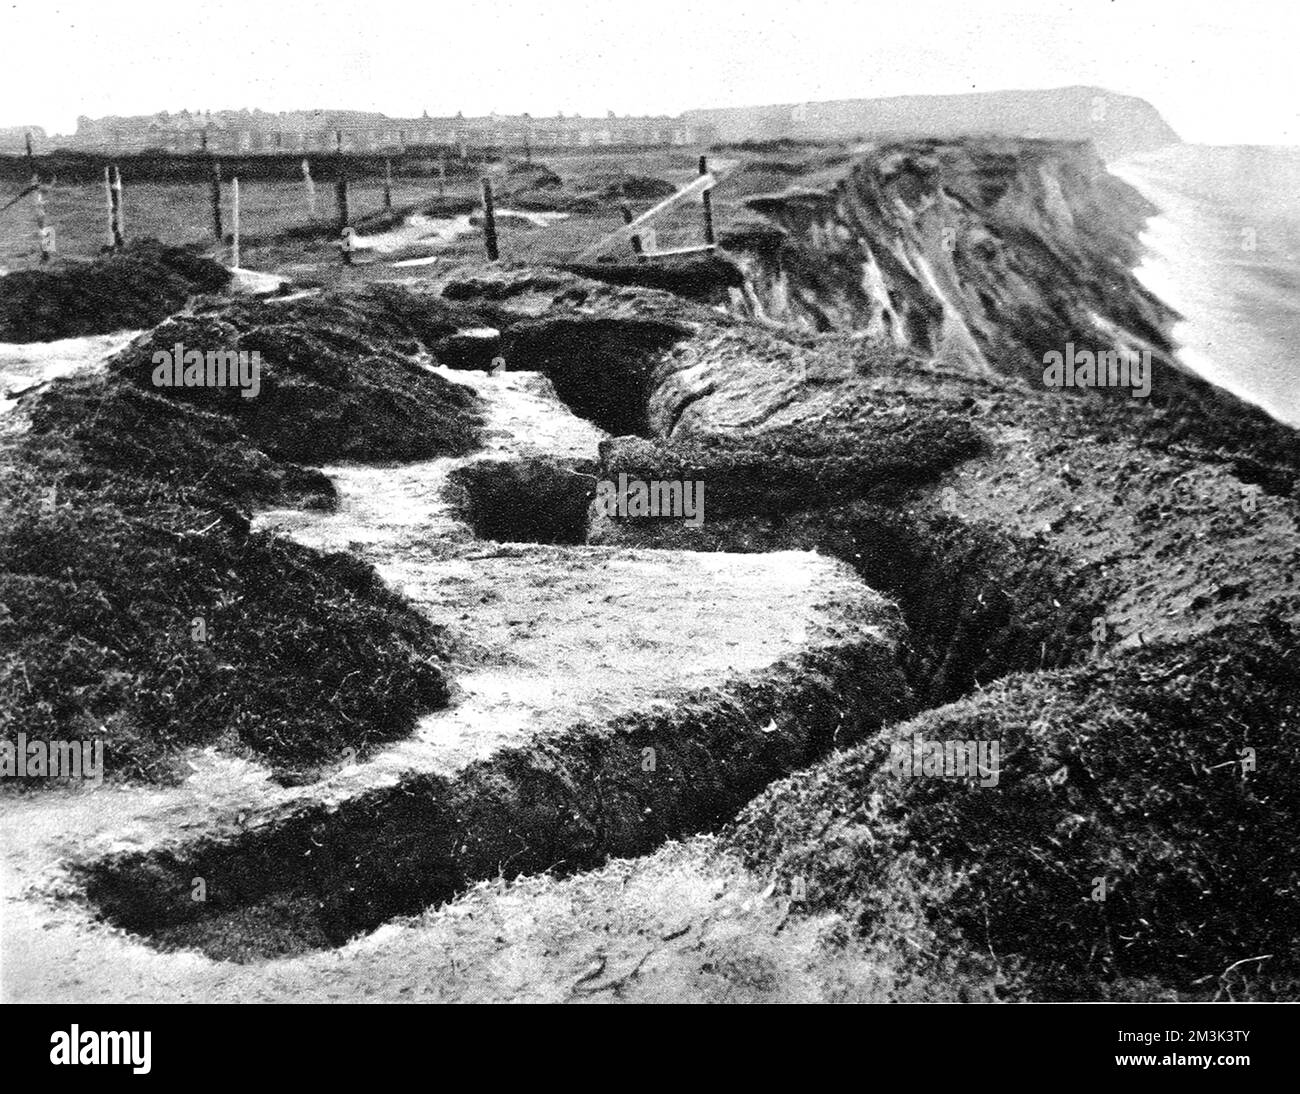 Enchâssements, semblables au type utilisé à l'avant, sur les falaises le long de la côte est de l'Angleterre. Date: P Banque D'Images